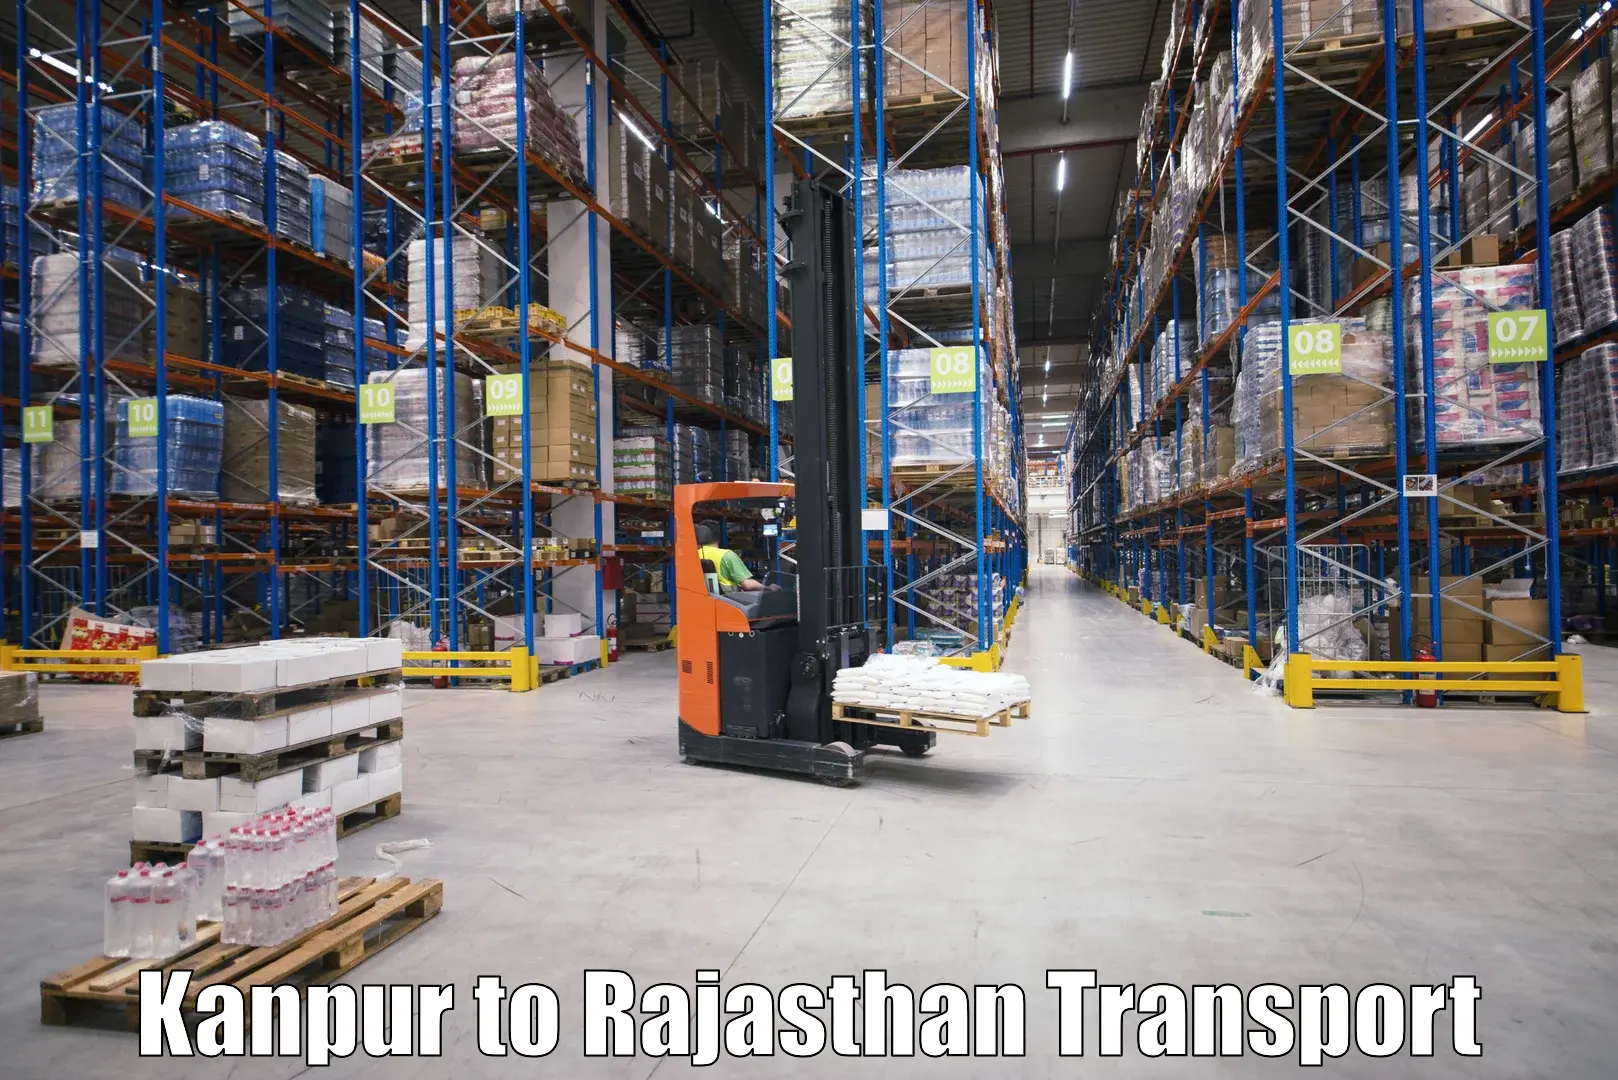 Vehicle transport services Kanpur to Yathalakunta